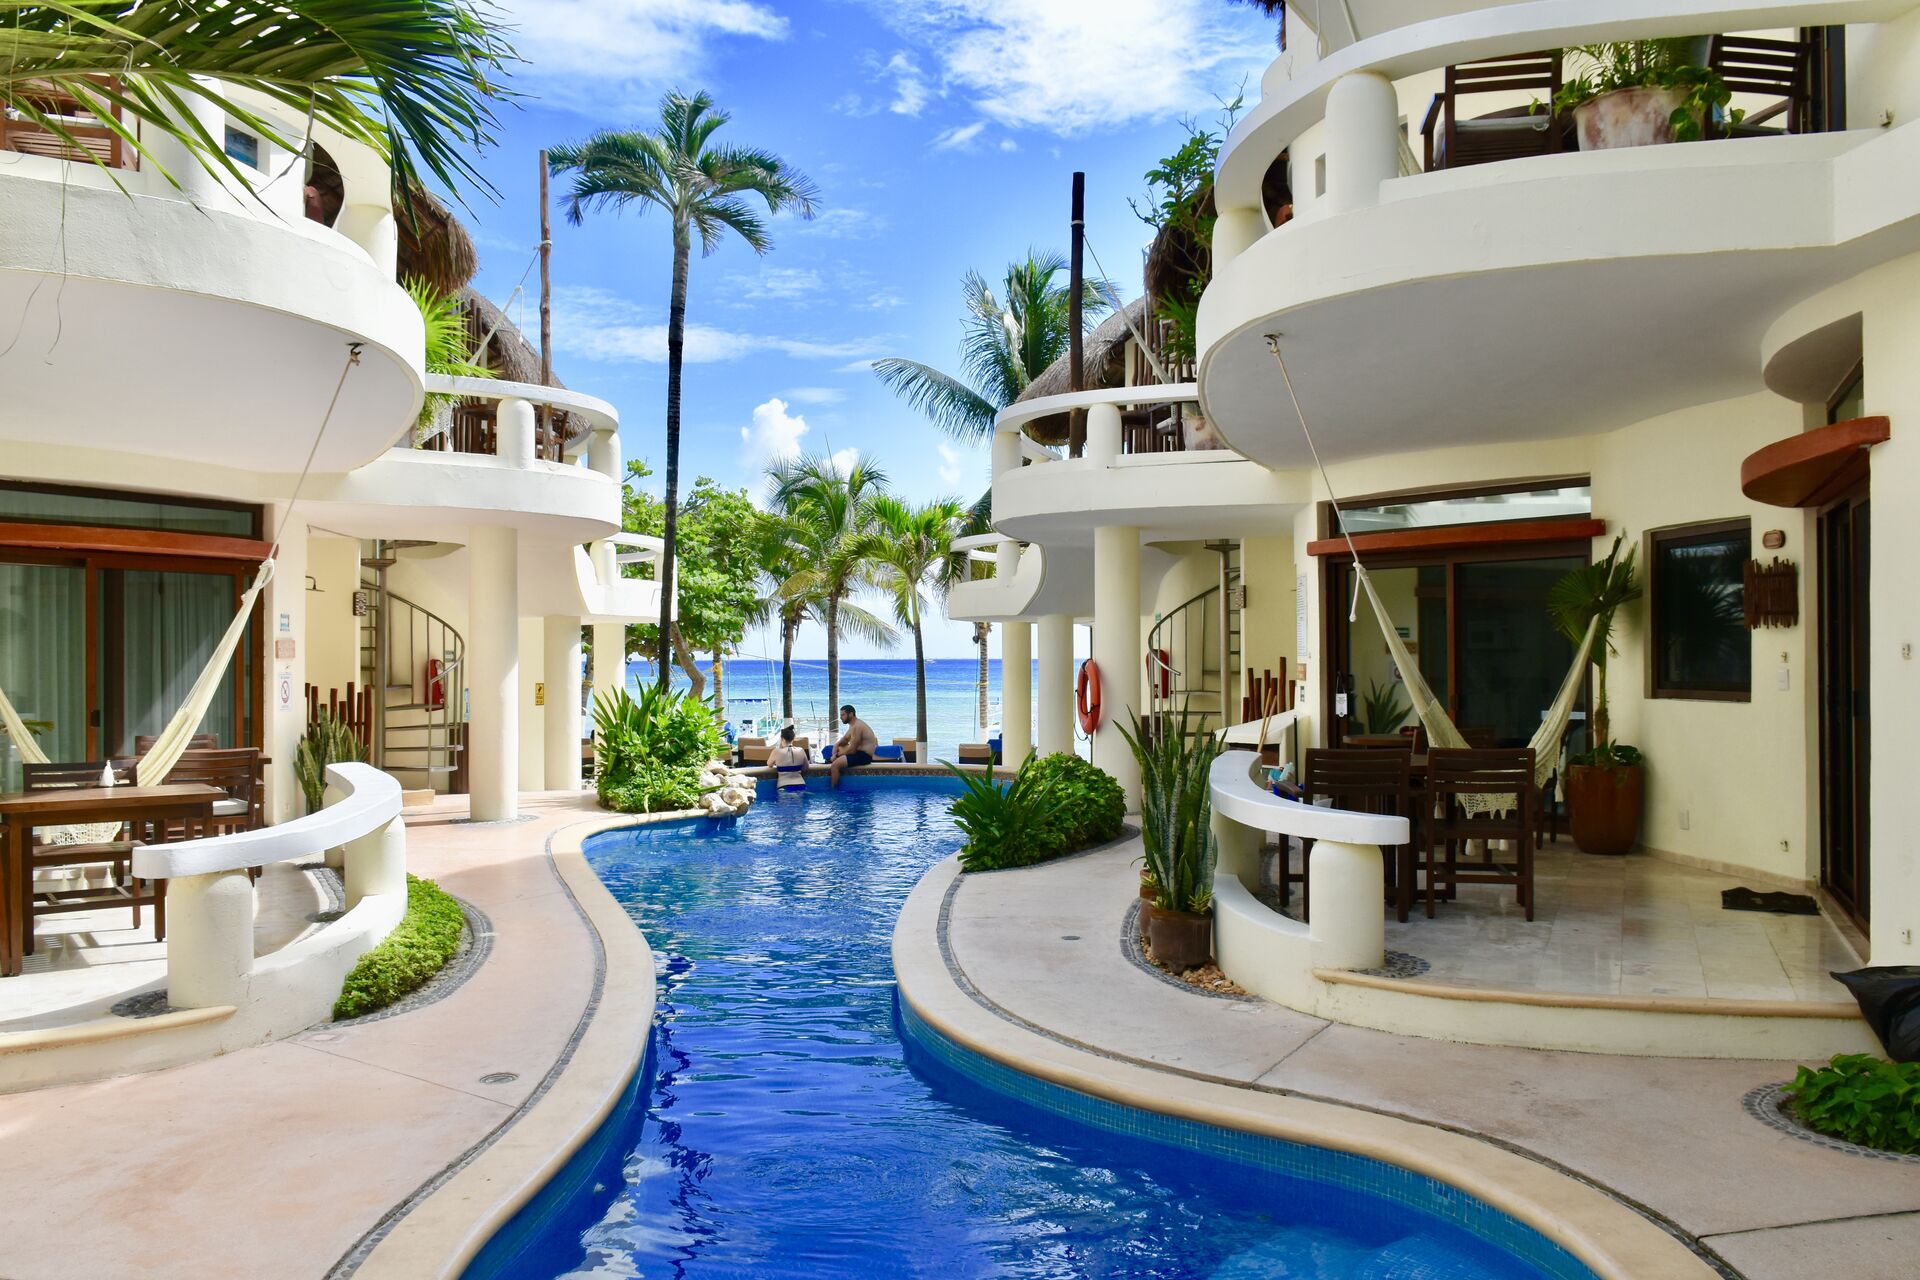 Ocean front hotel pool.